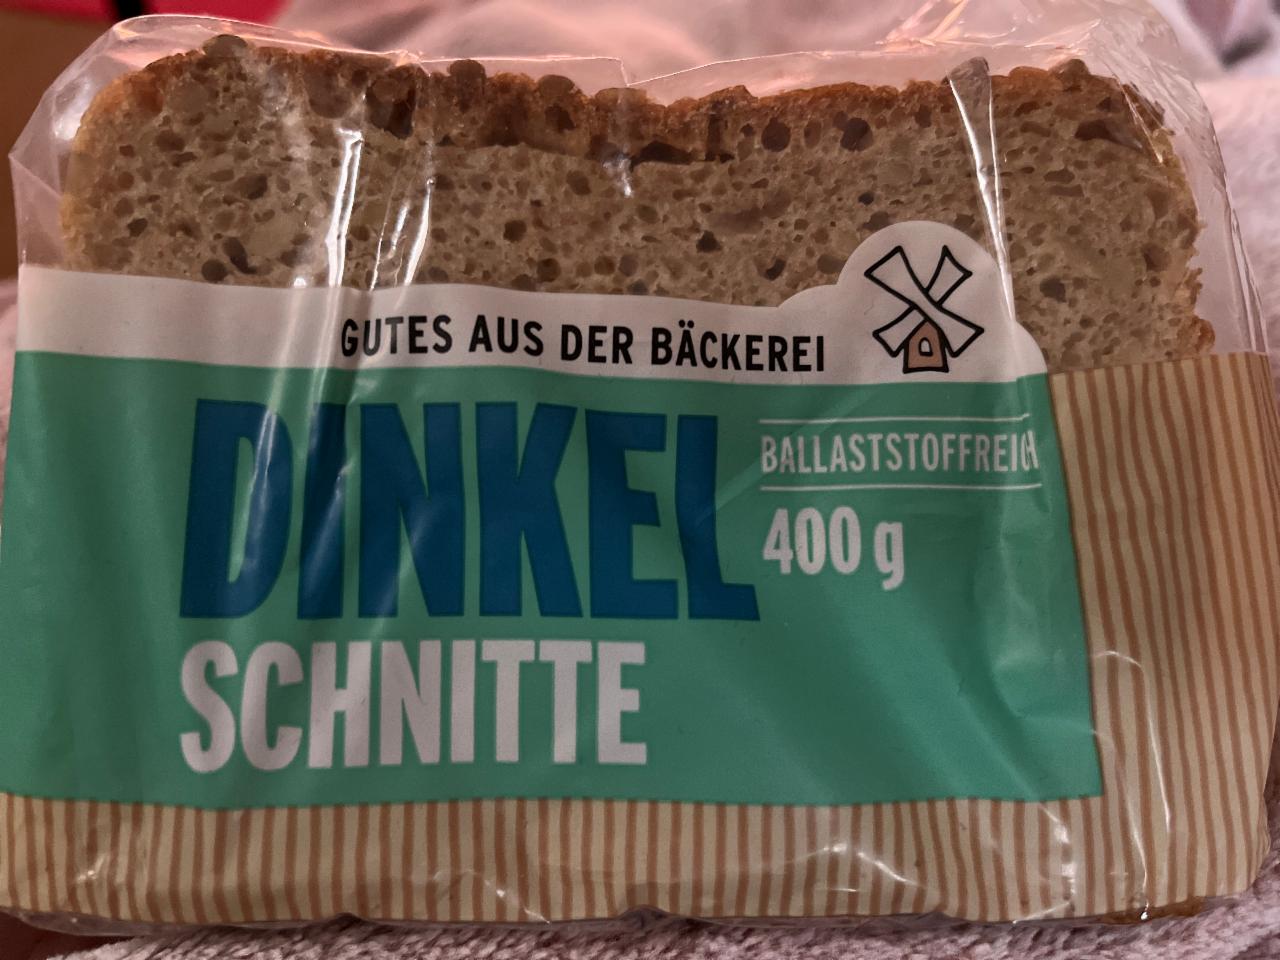 Фото - Dinkel Schnitte Gutes aus der Bäckerei